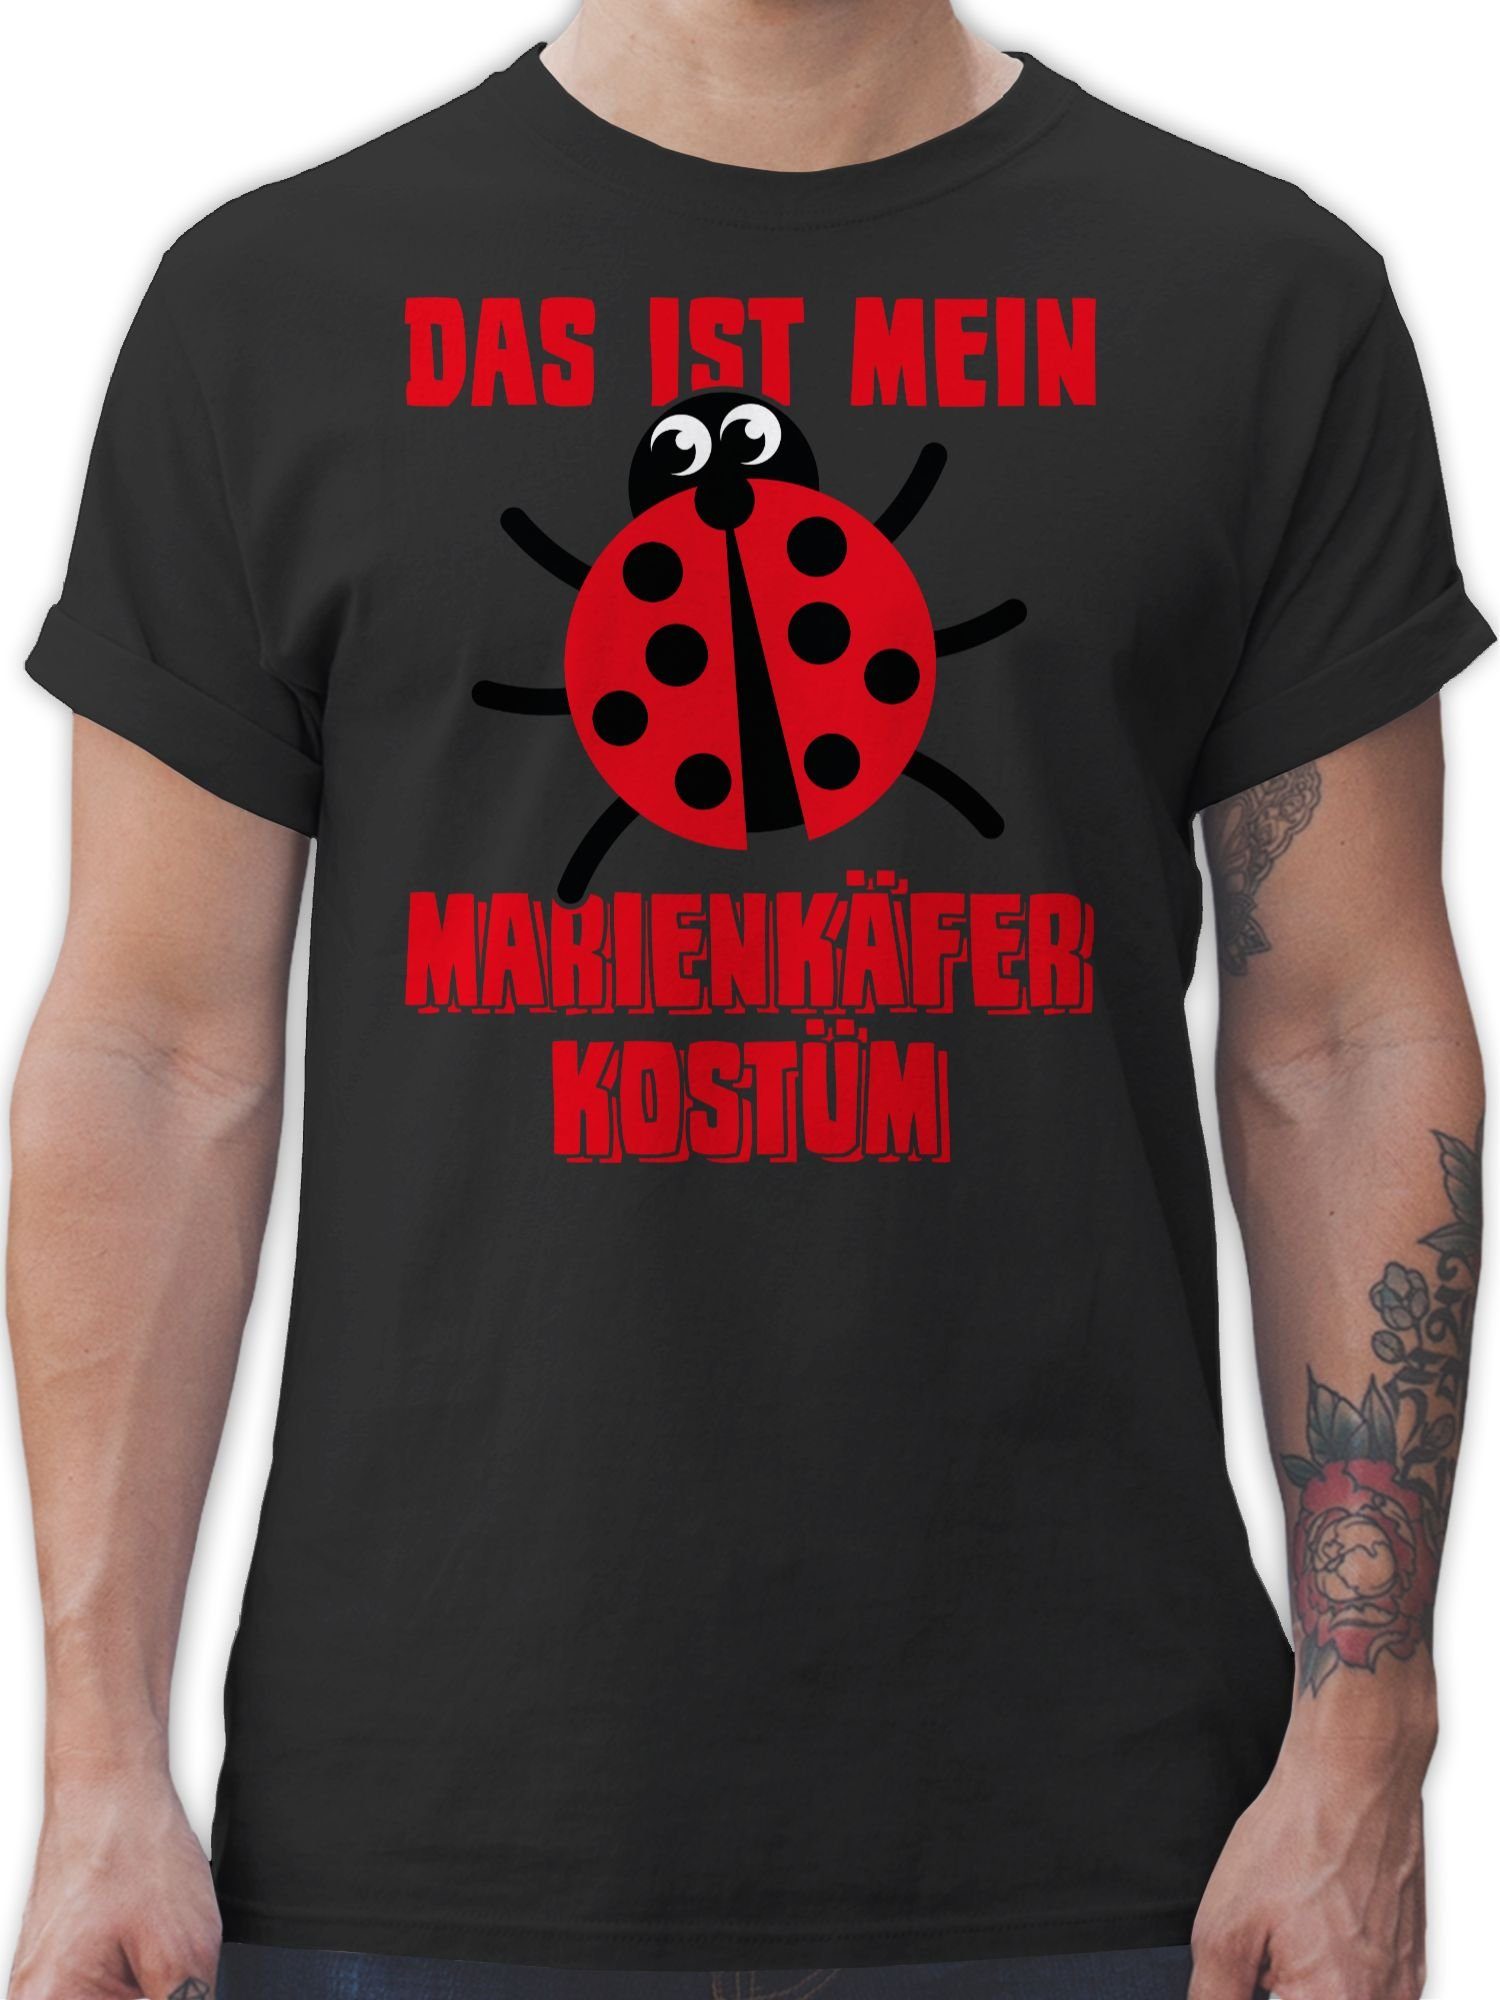 Das Kostüm - T-Shirt Marienkaefer Outfit mein Käfer 1 Marienkäferkostüm ist Karneval Marienkäfer Schwarz Shirtracer